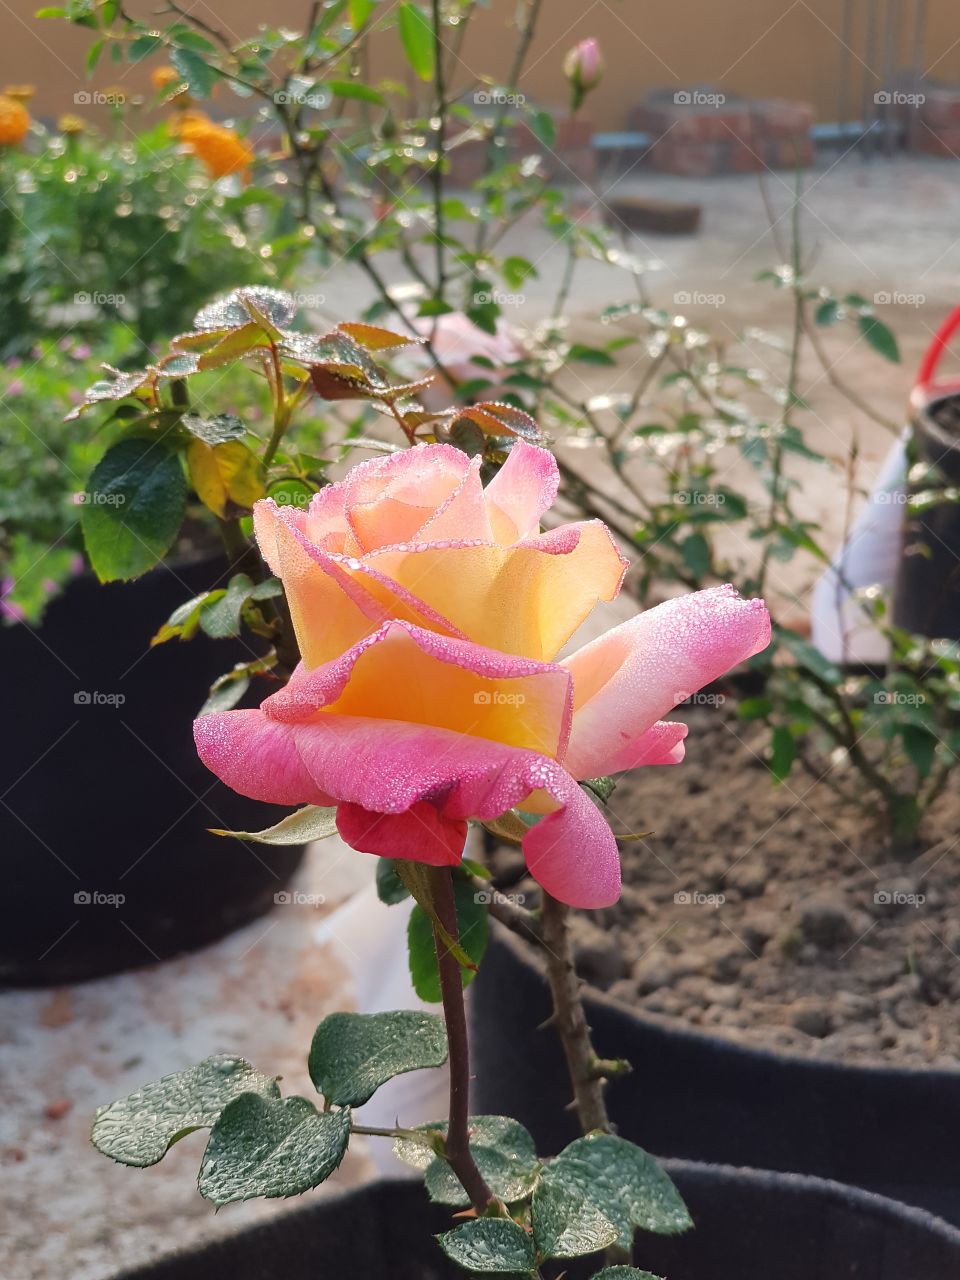 yellow rose around my garden